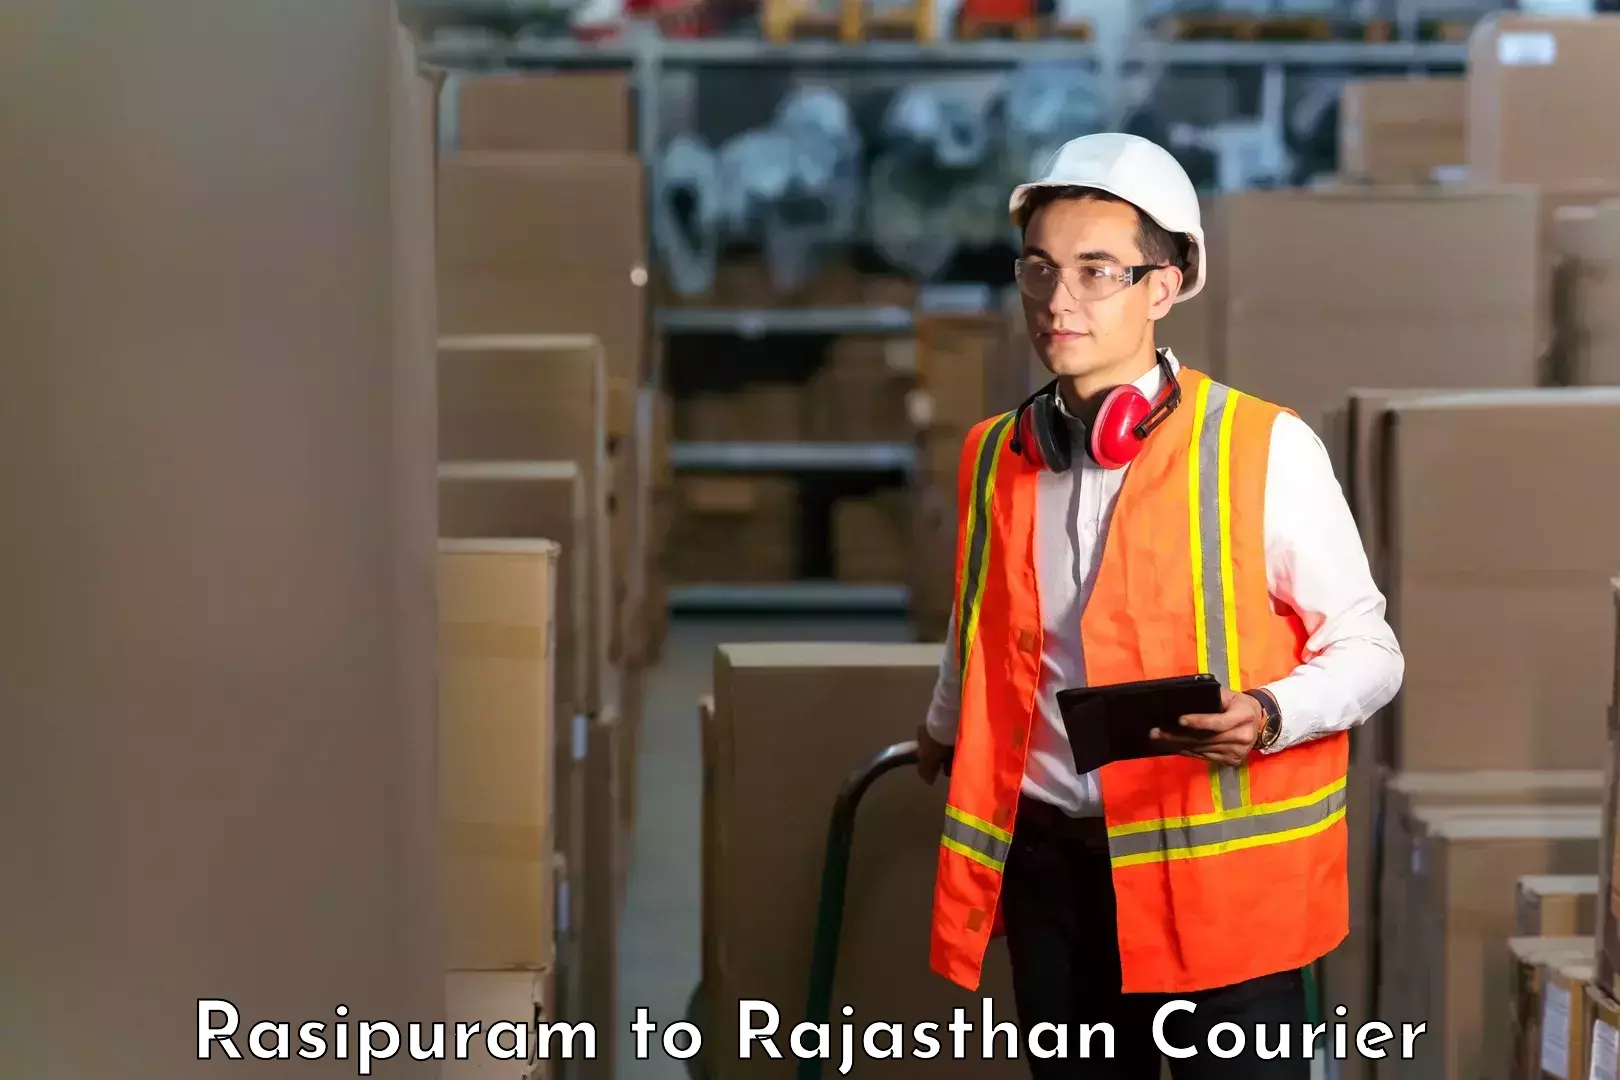 Efficient parcel service Rasipuram to Chittorgarh